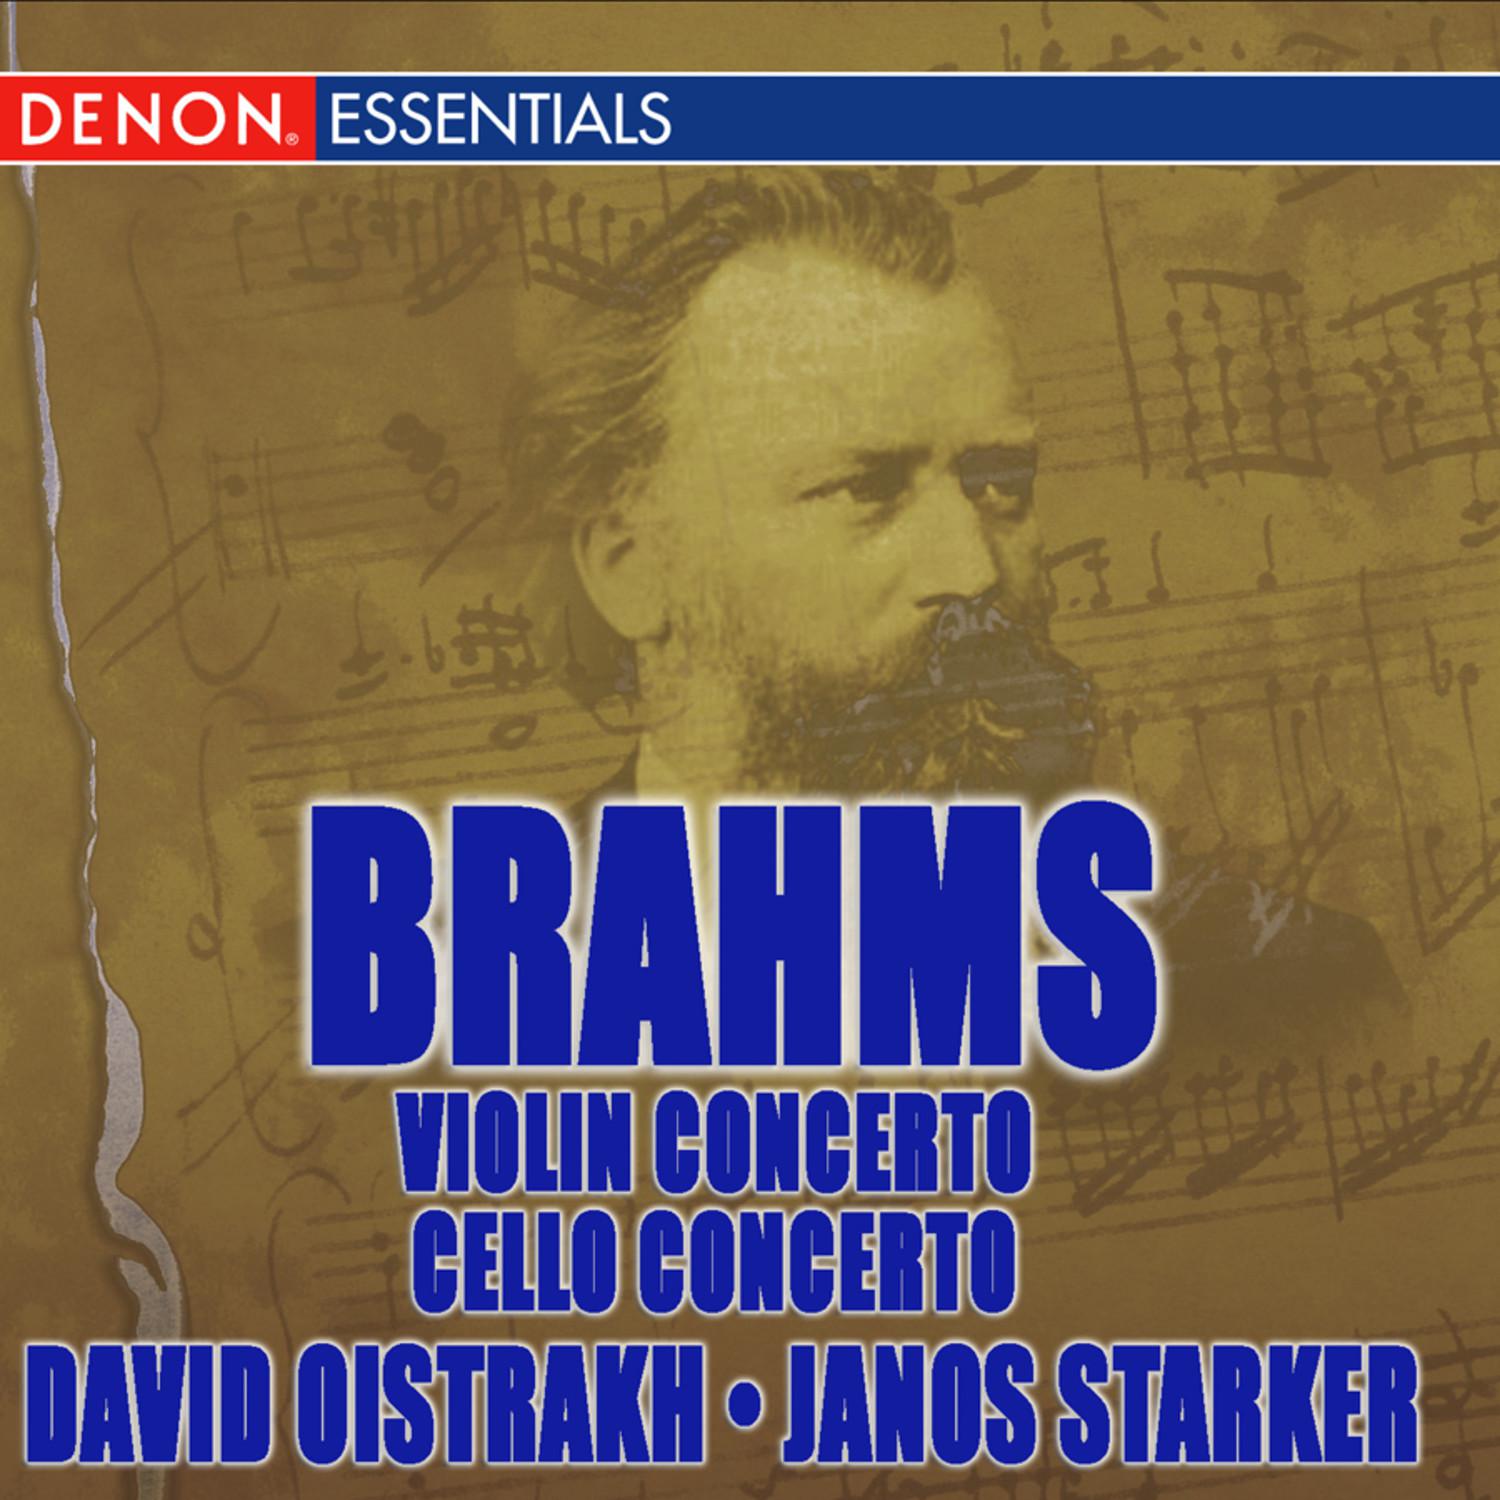 Concerto for Violin & Orchestra in D Major, Op. 77: I. Allegro non troppo